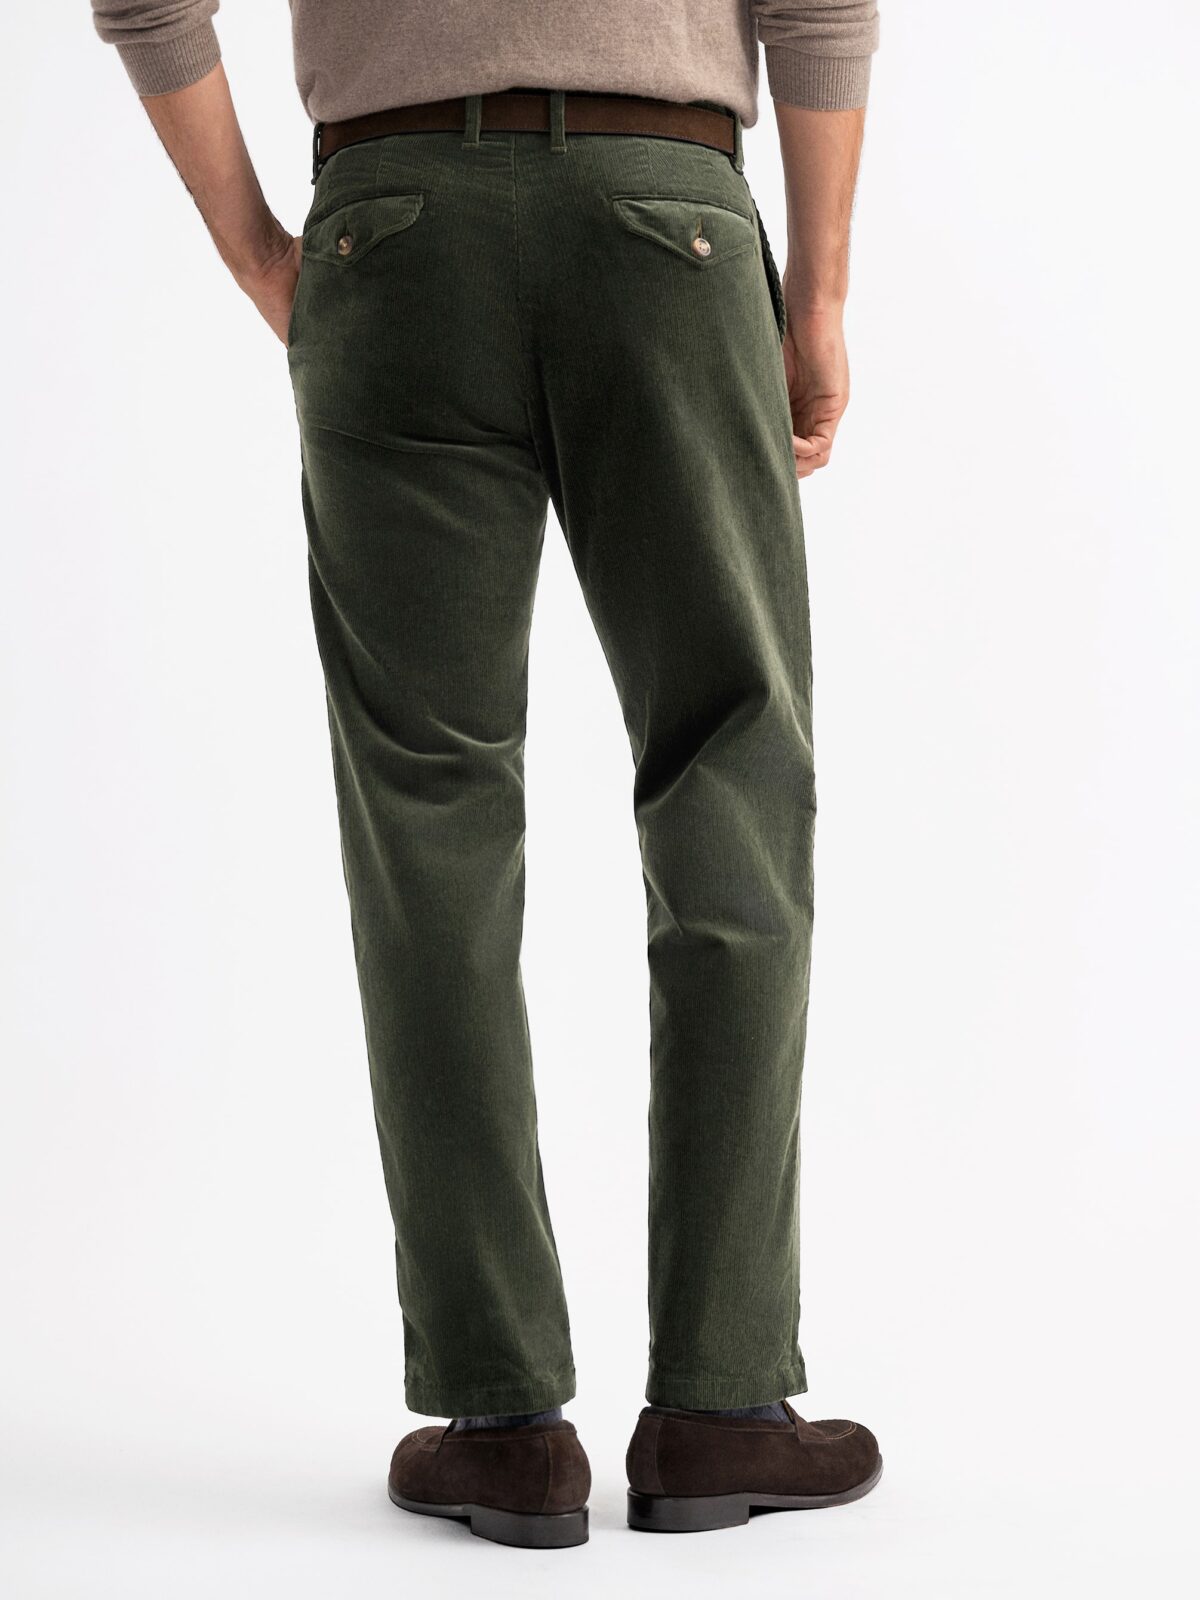 Green pants | Corduroy pants | McVERDI | Winterpants | Baby cord